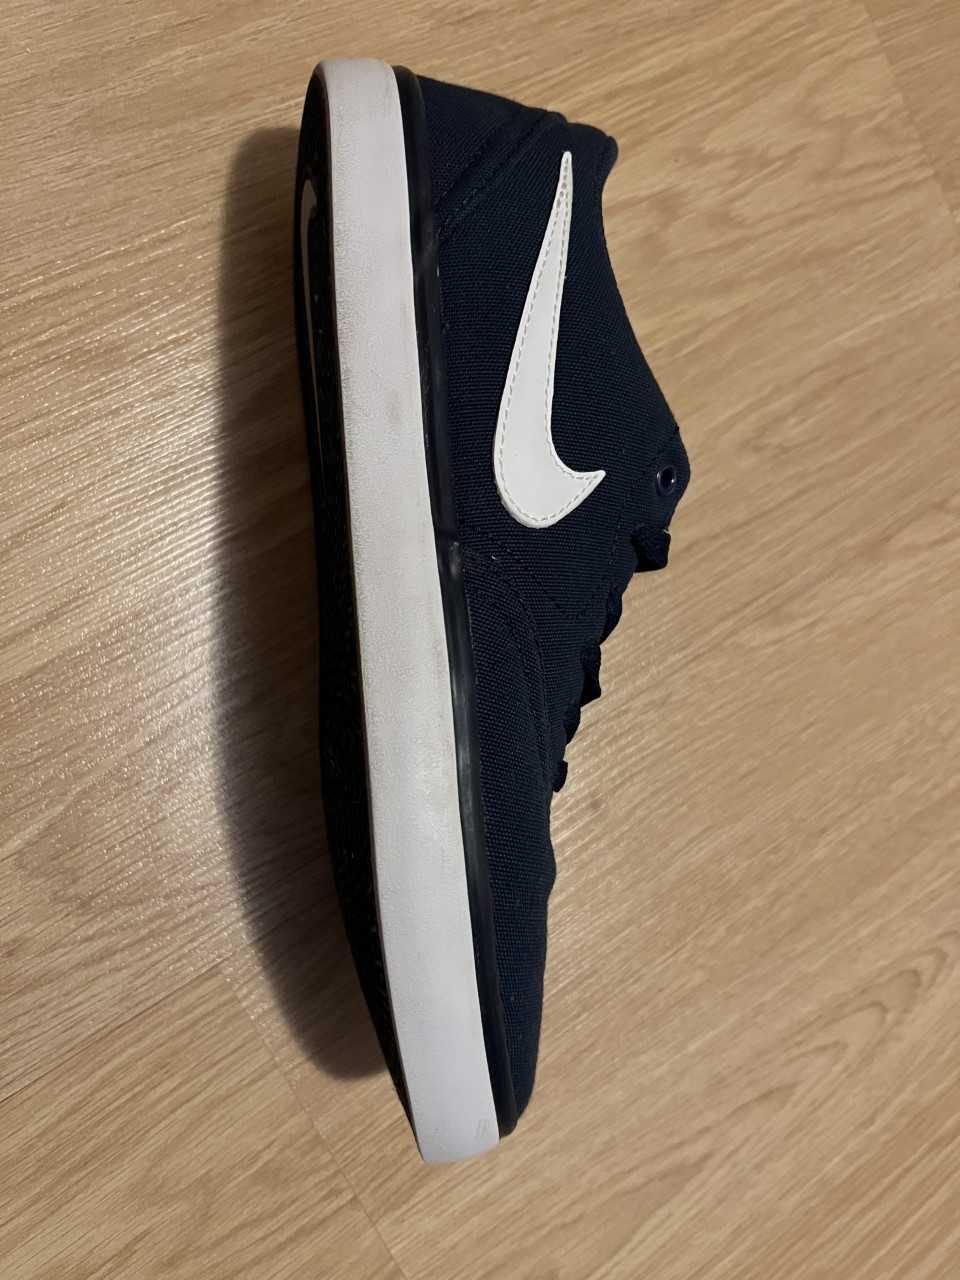 Sapatilhas Nike SB